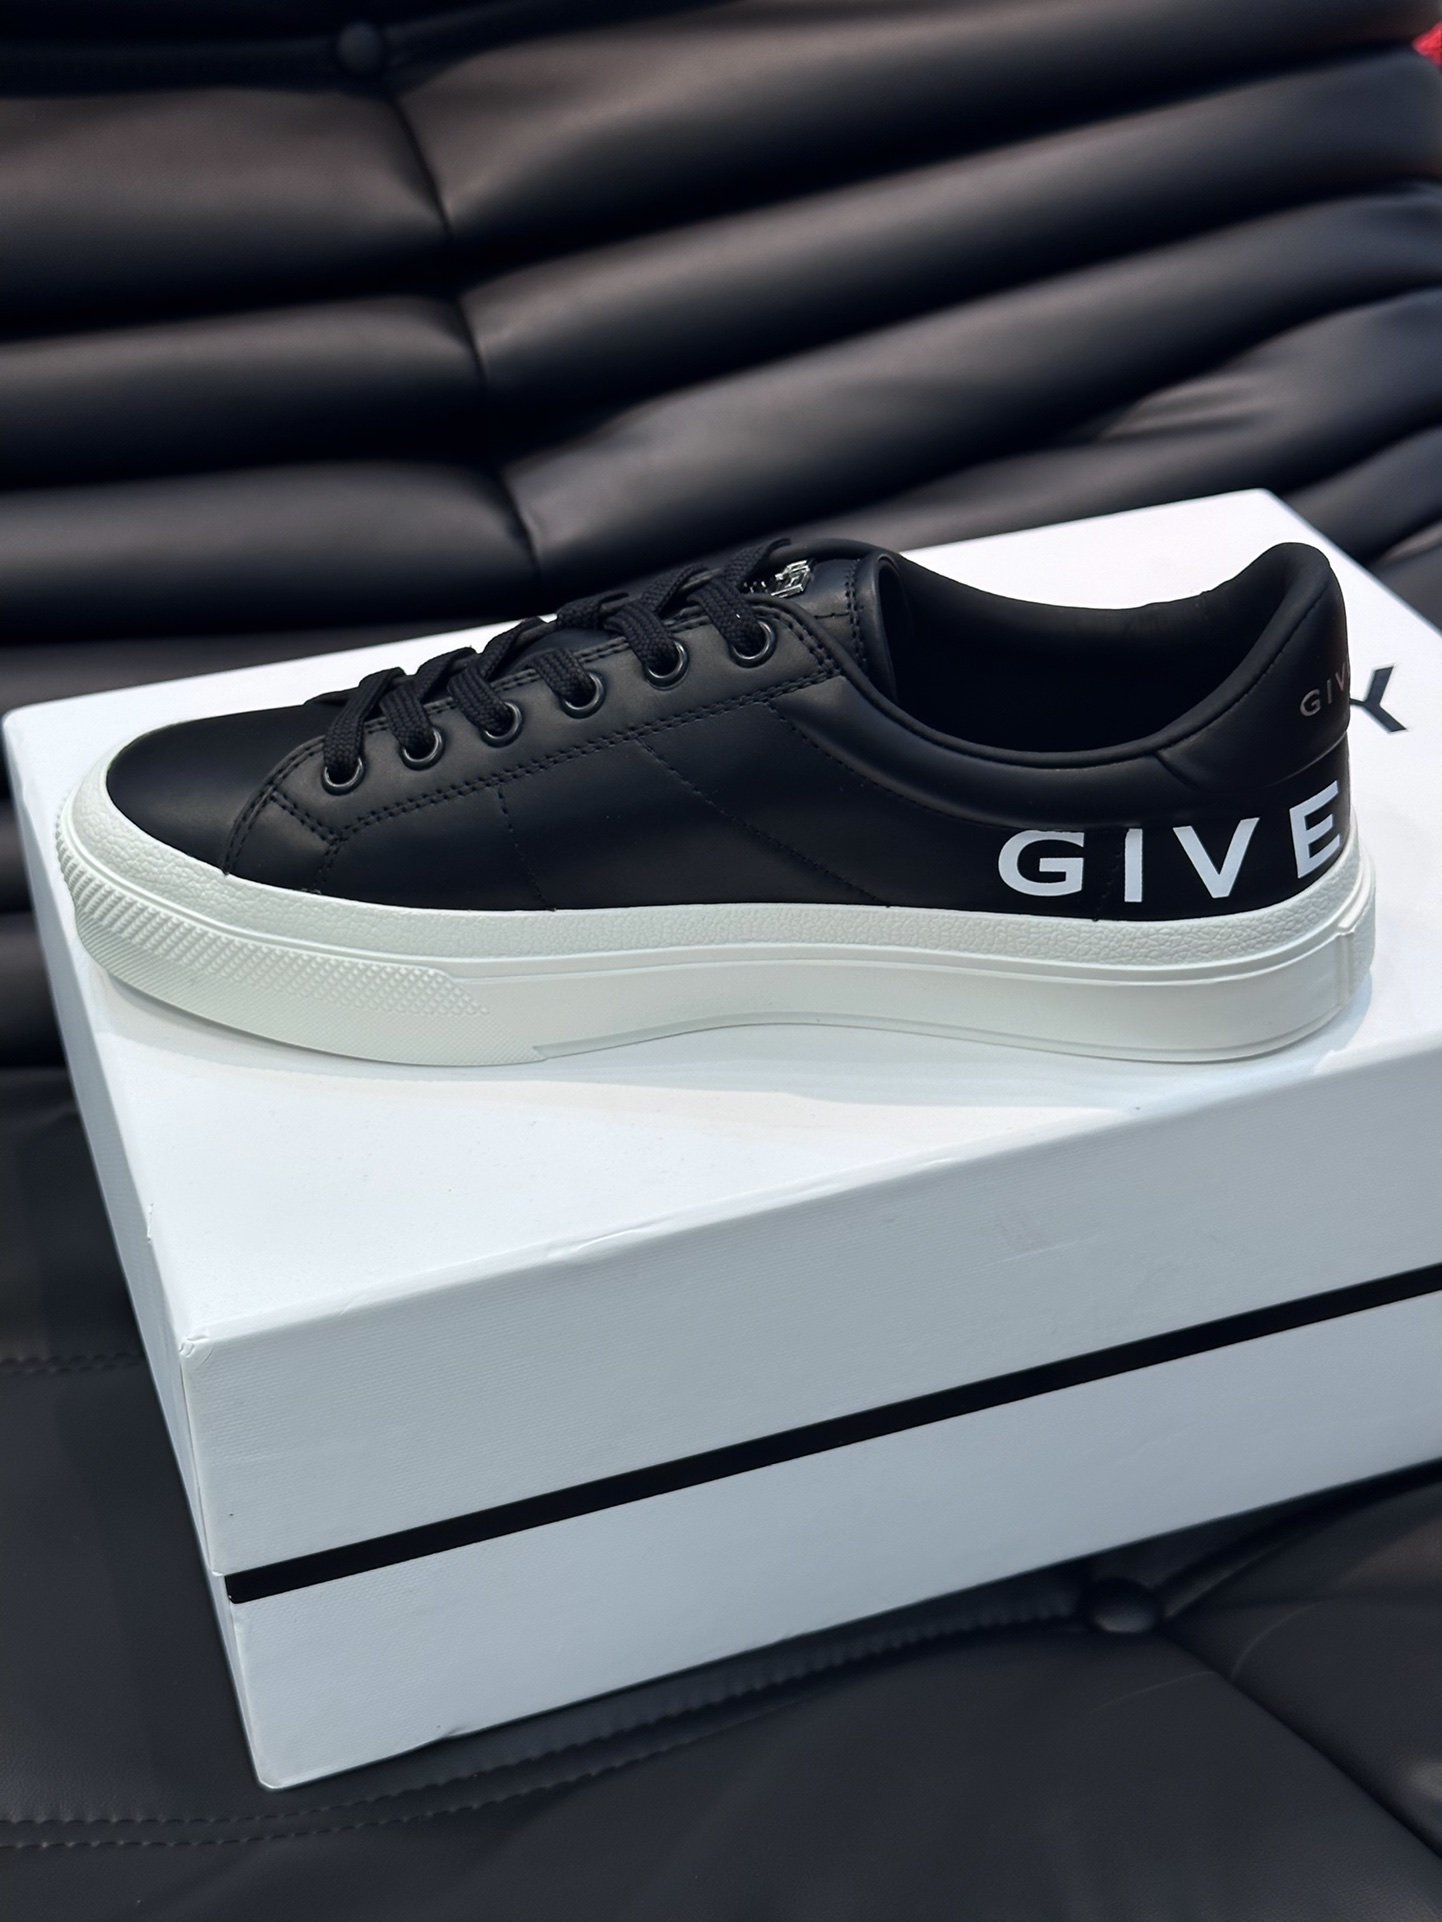 Gv*y全新GIV1男士低帮休闲板鞋